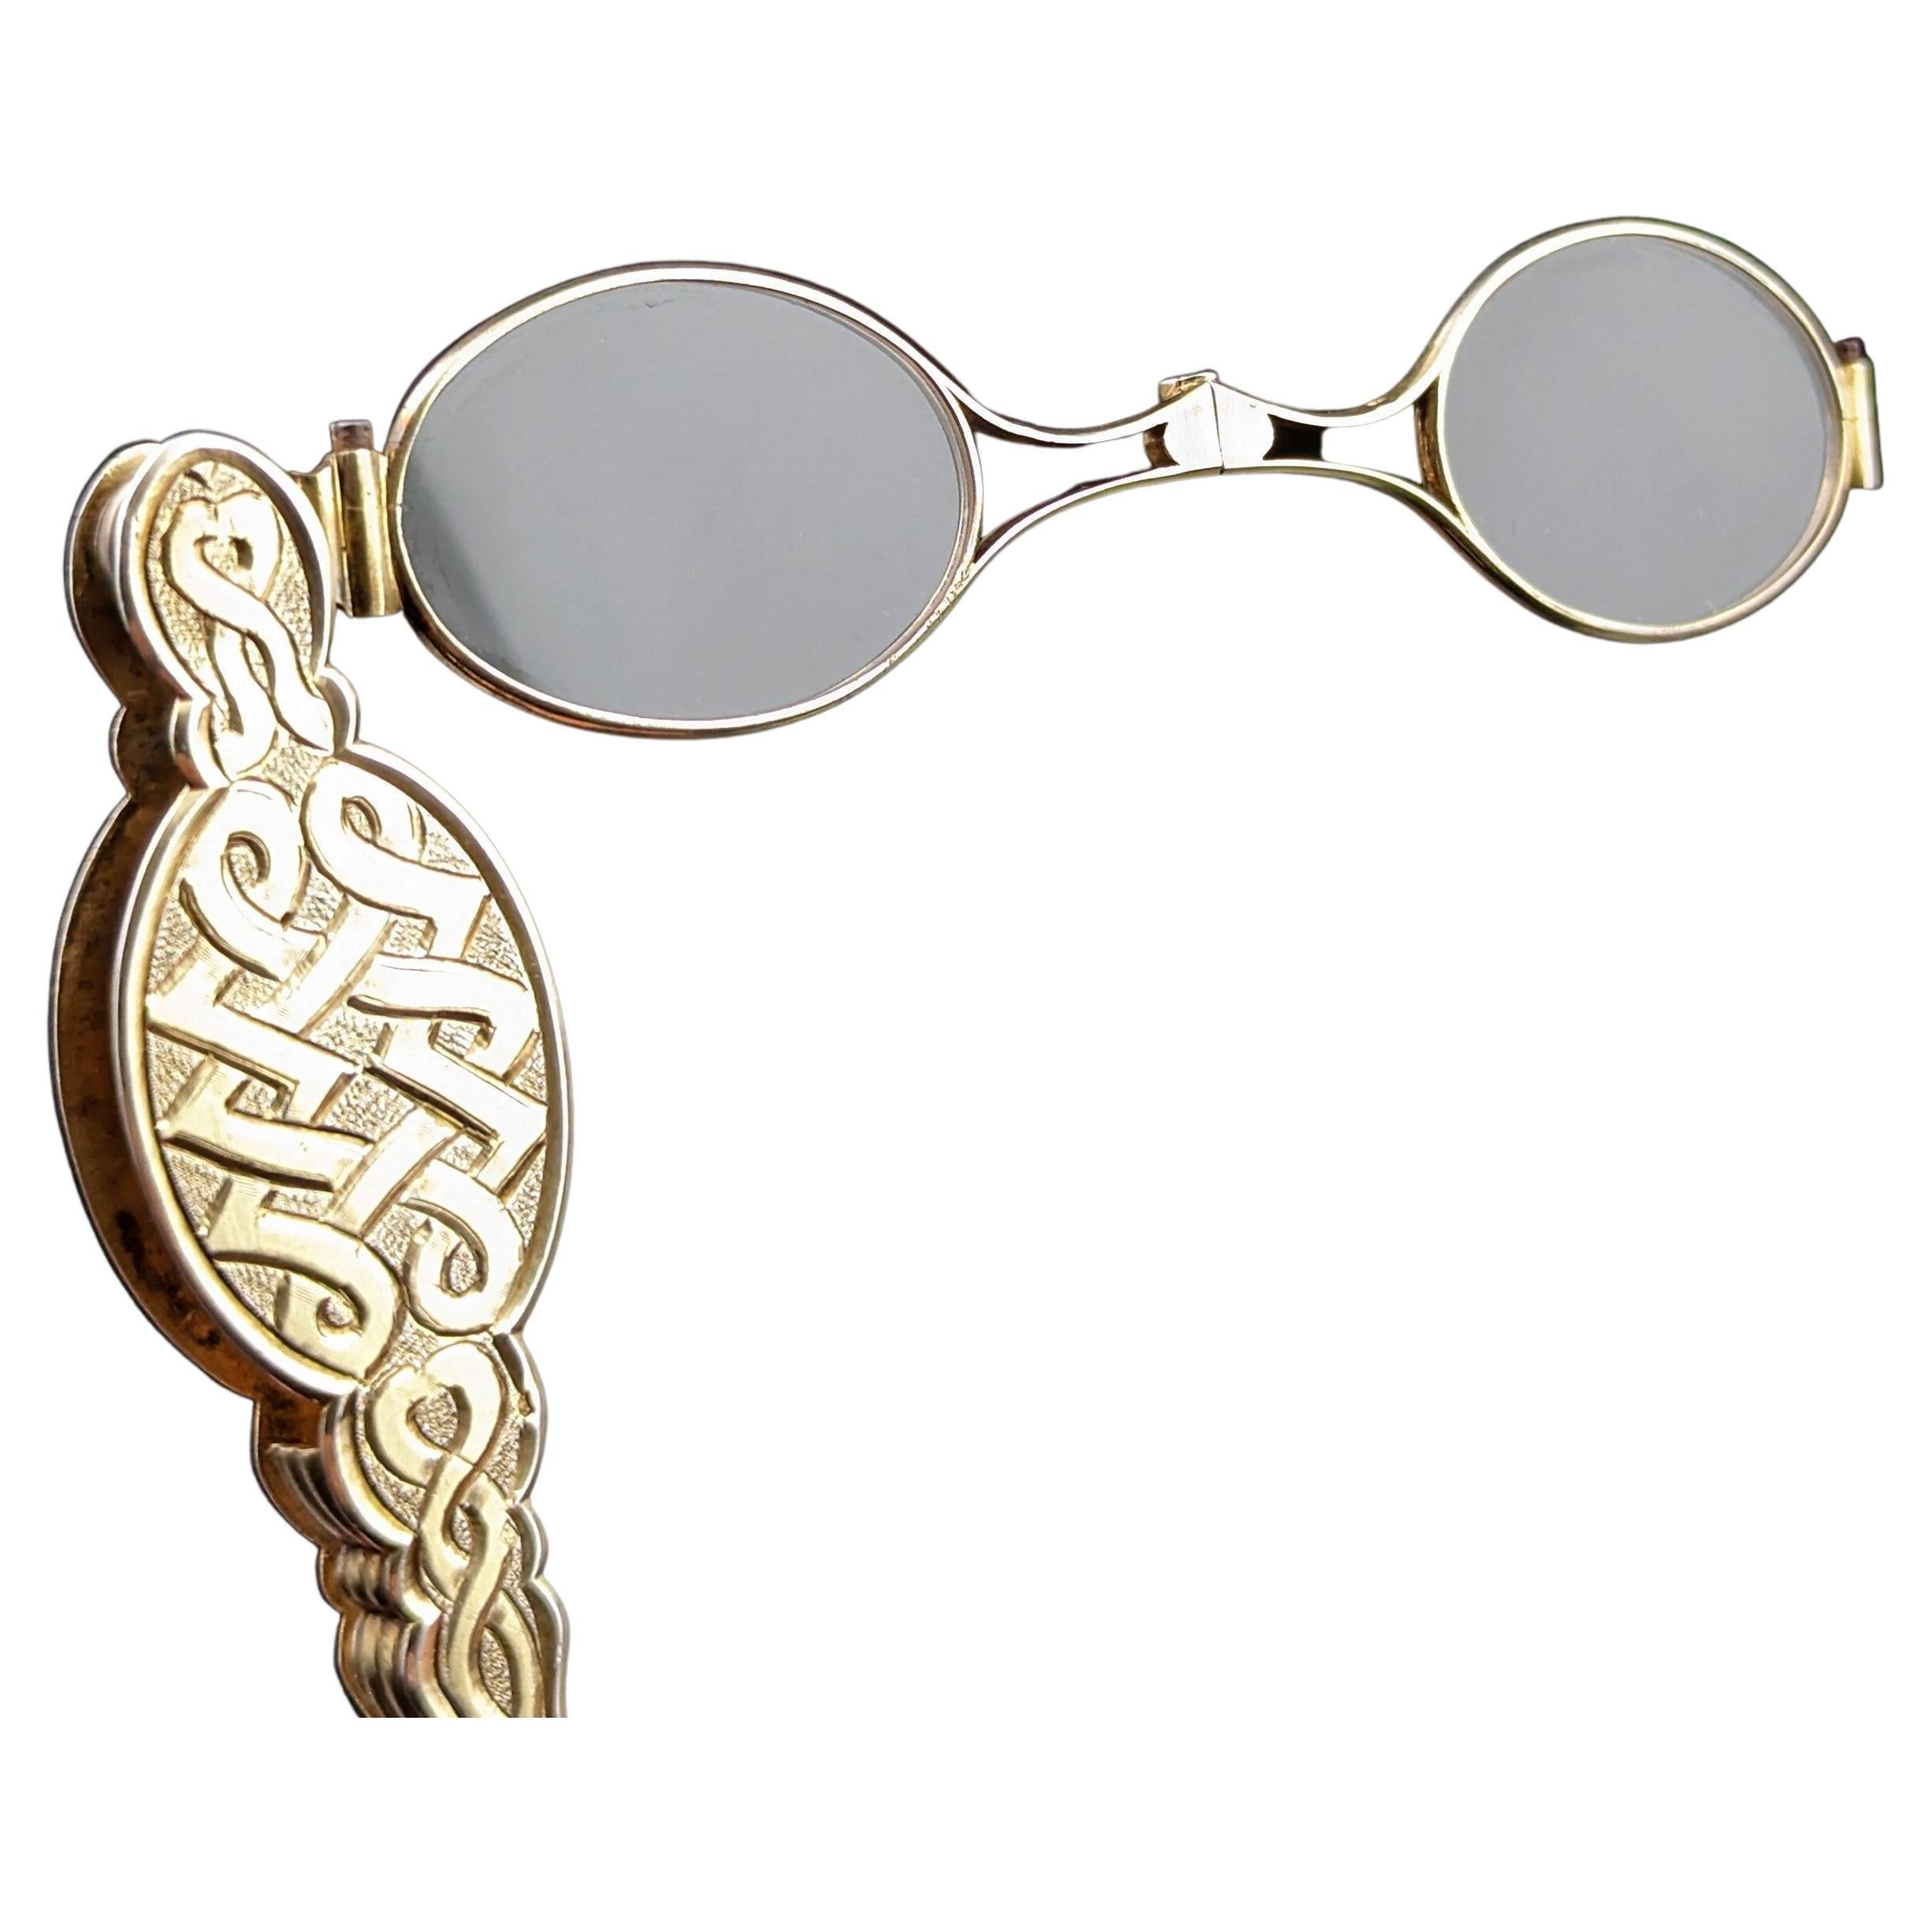 Antike französische vergoldete lorgnettes aus Silber, spectacles, P-J Meurice 